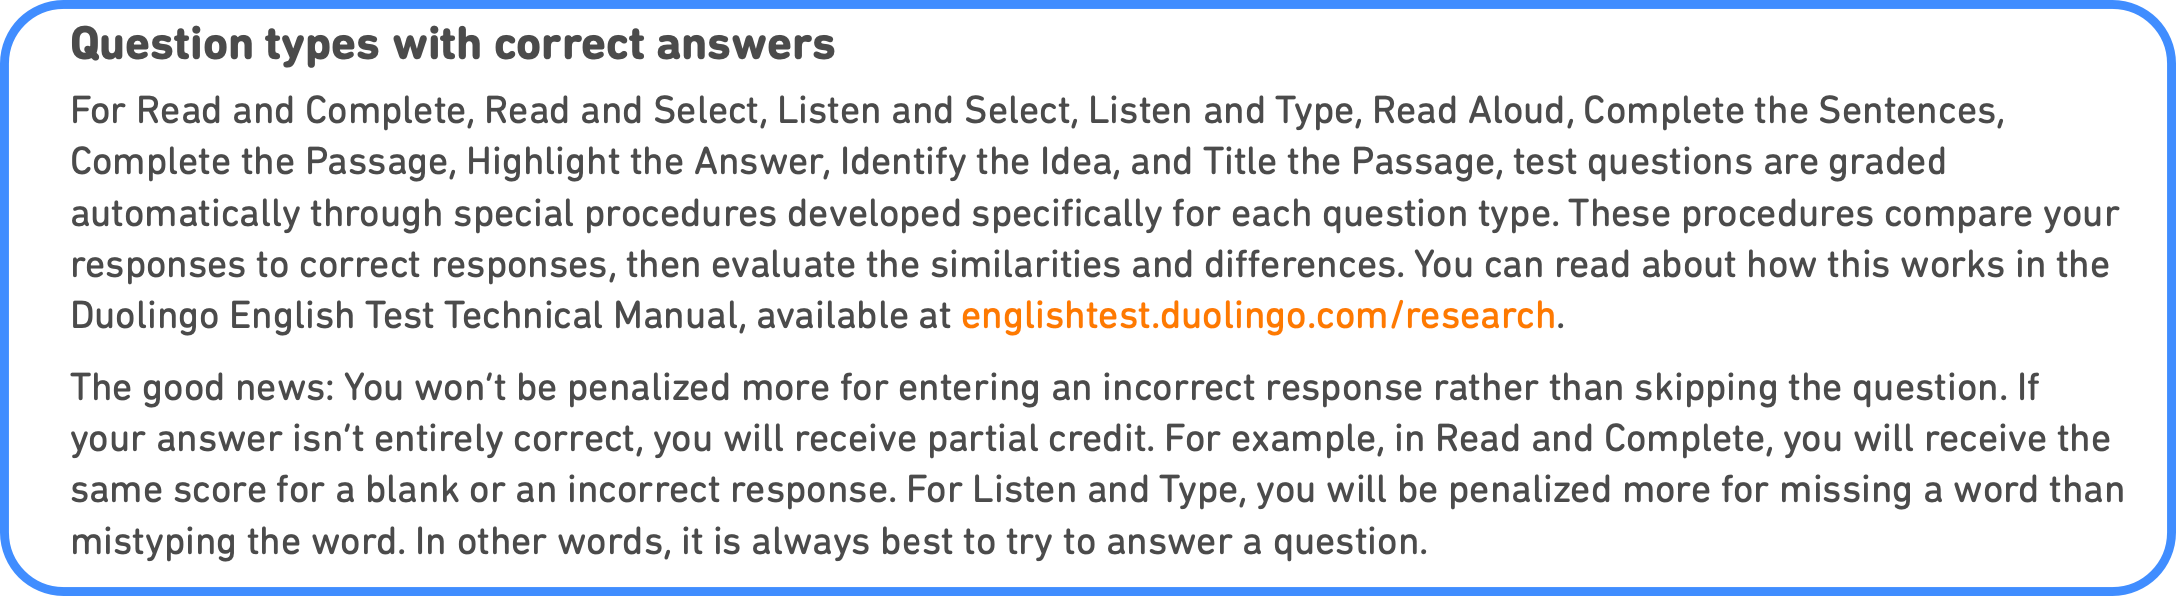 Duolingo question scored explanation, det practice platform, Duolingo Test preparation, question types explain